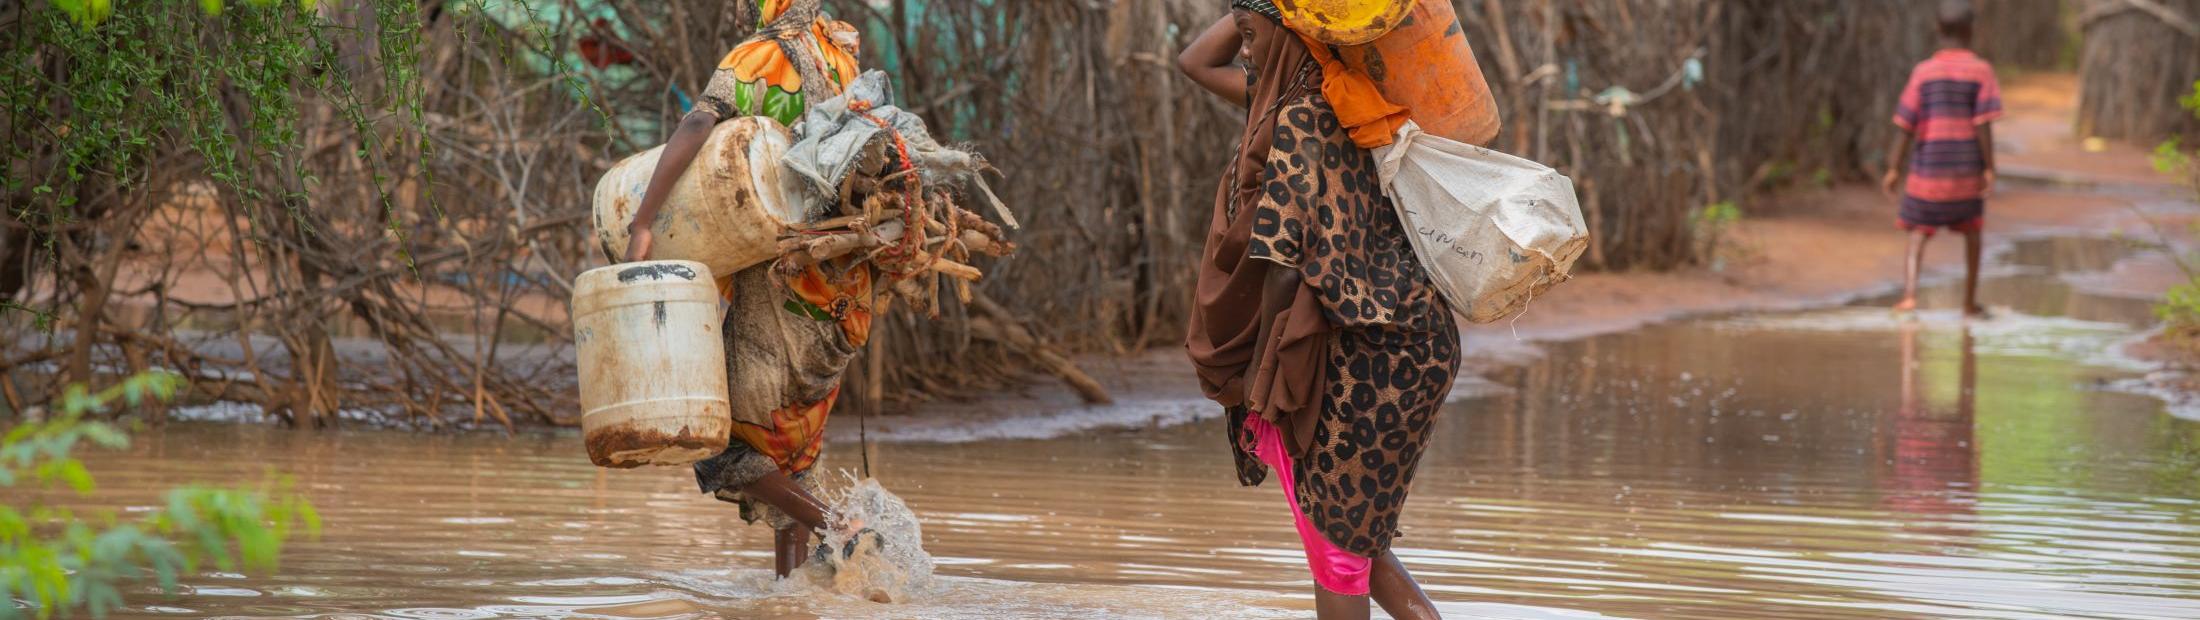 Inundaciones en el Cuerno de África: miles de personas desplazadas afectadas